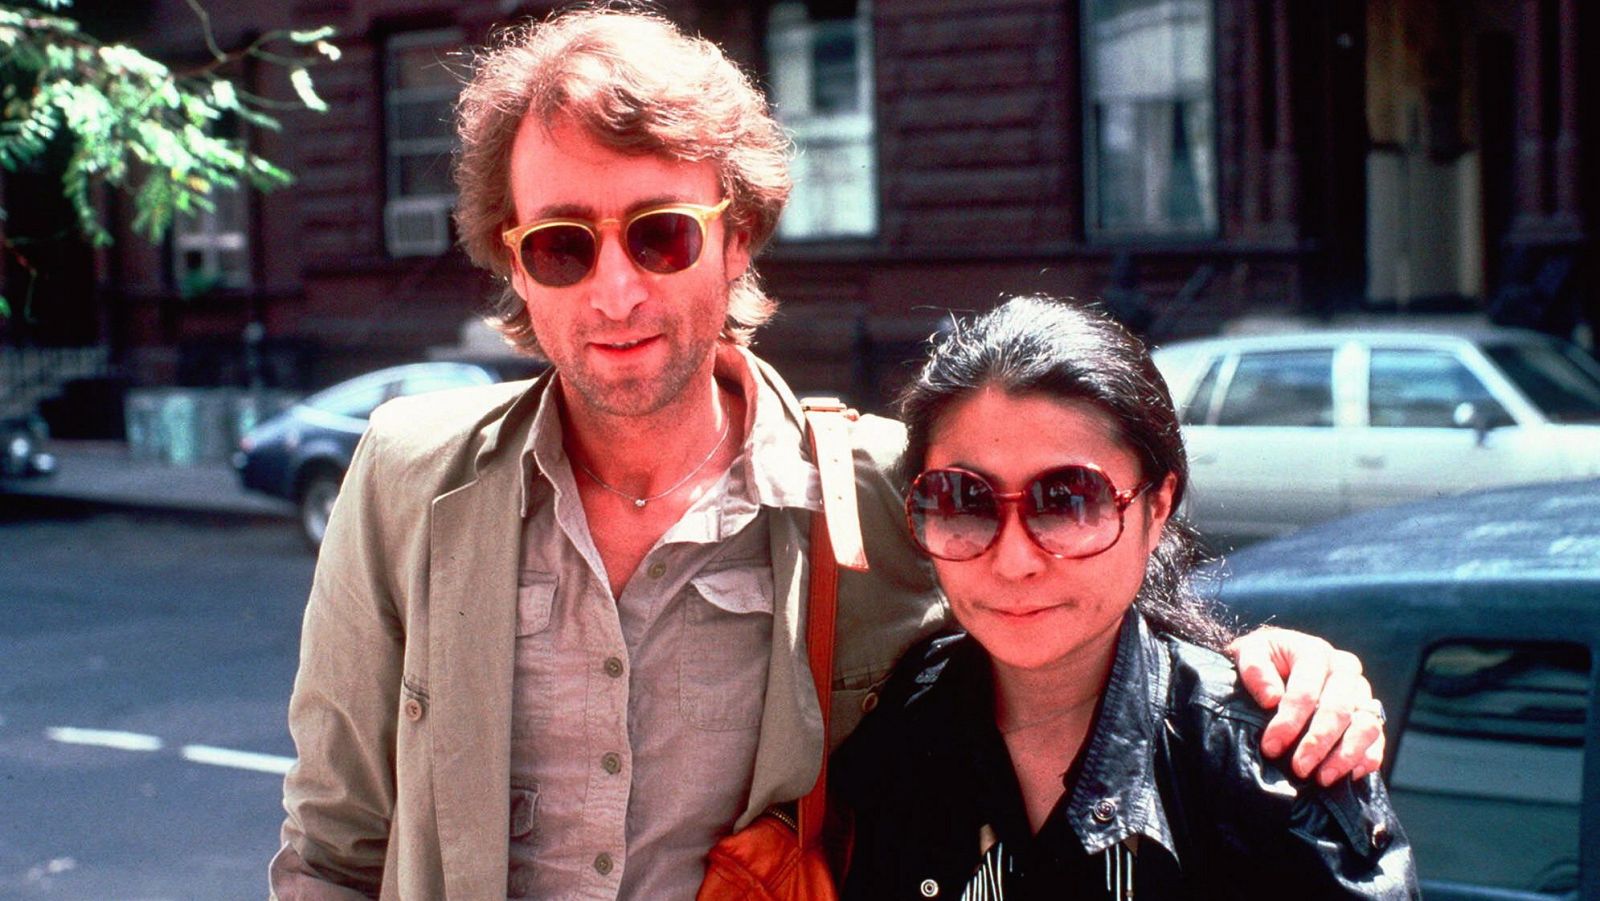 El mundo recuerda a John Lennon en el 40 aniversario de su asesinato